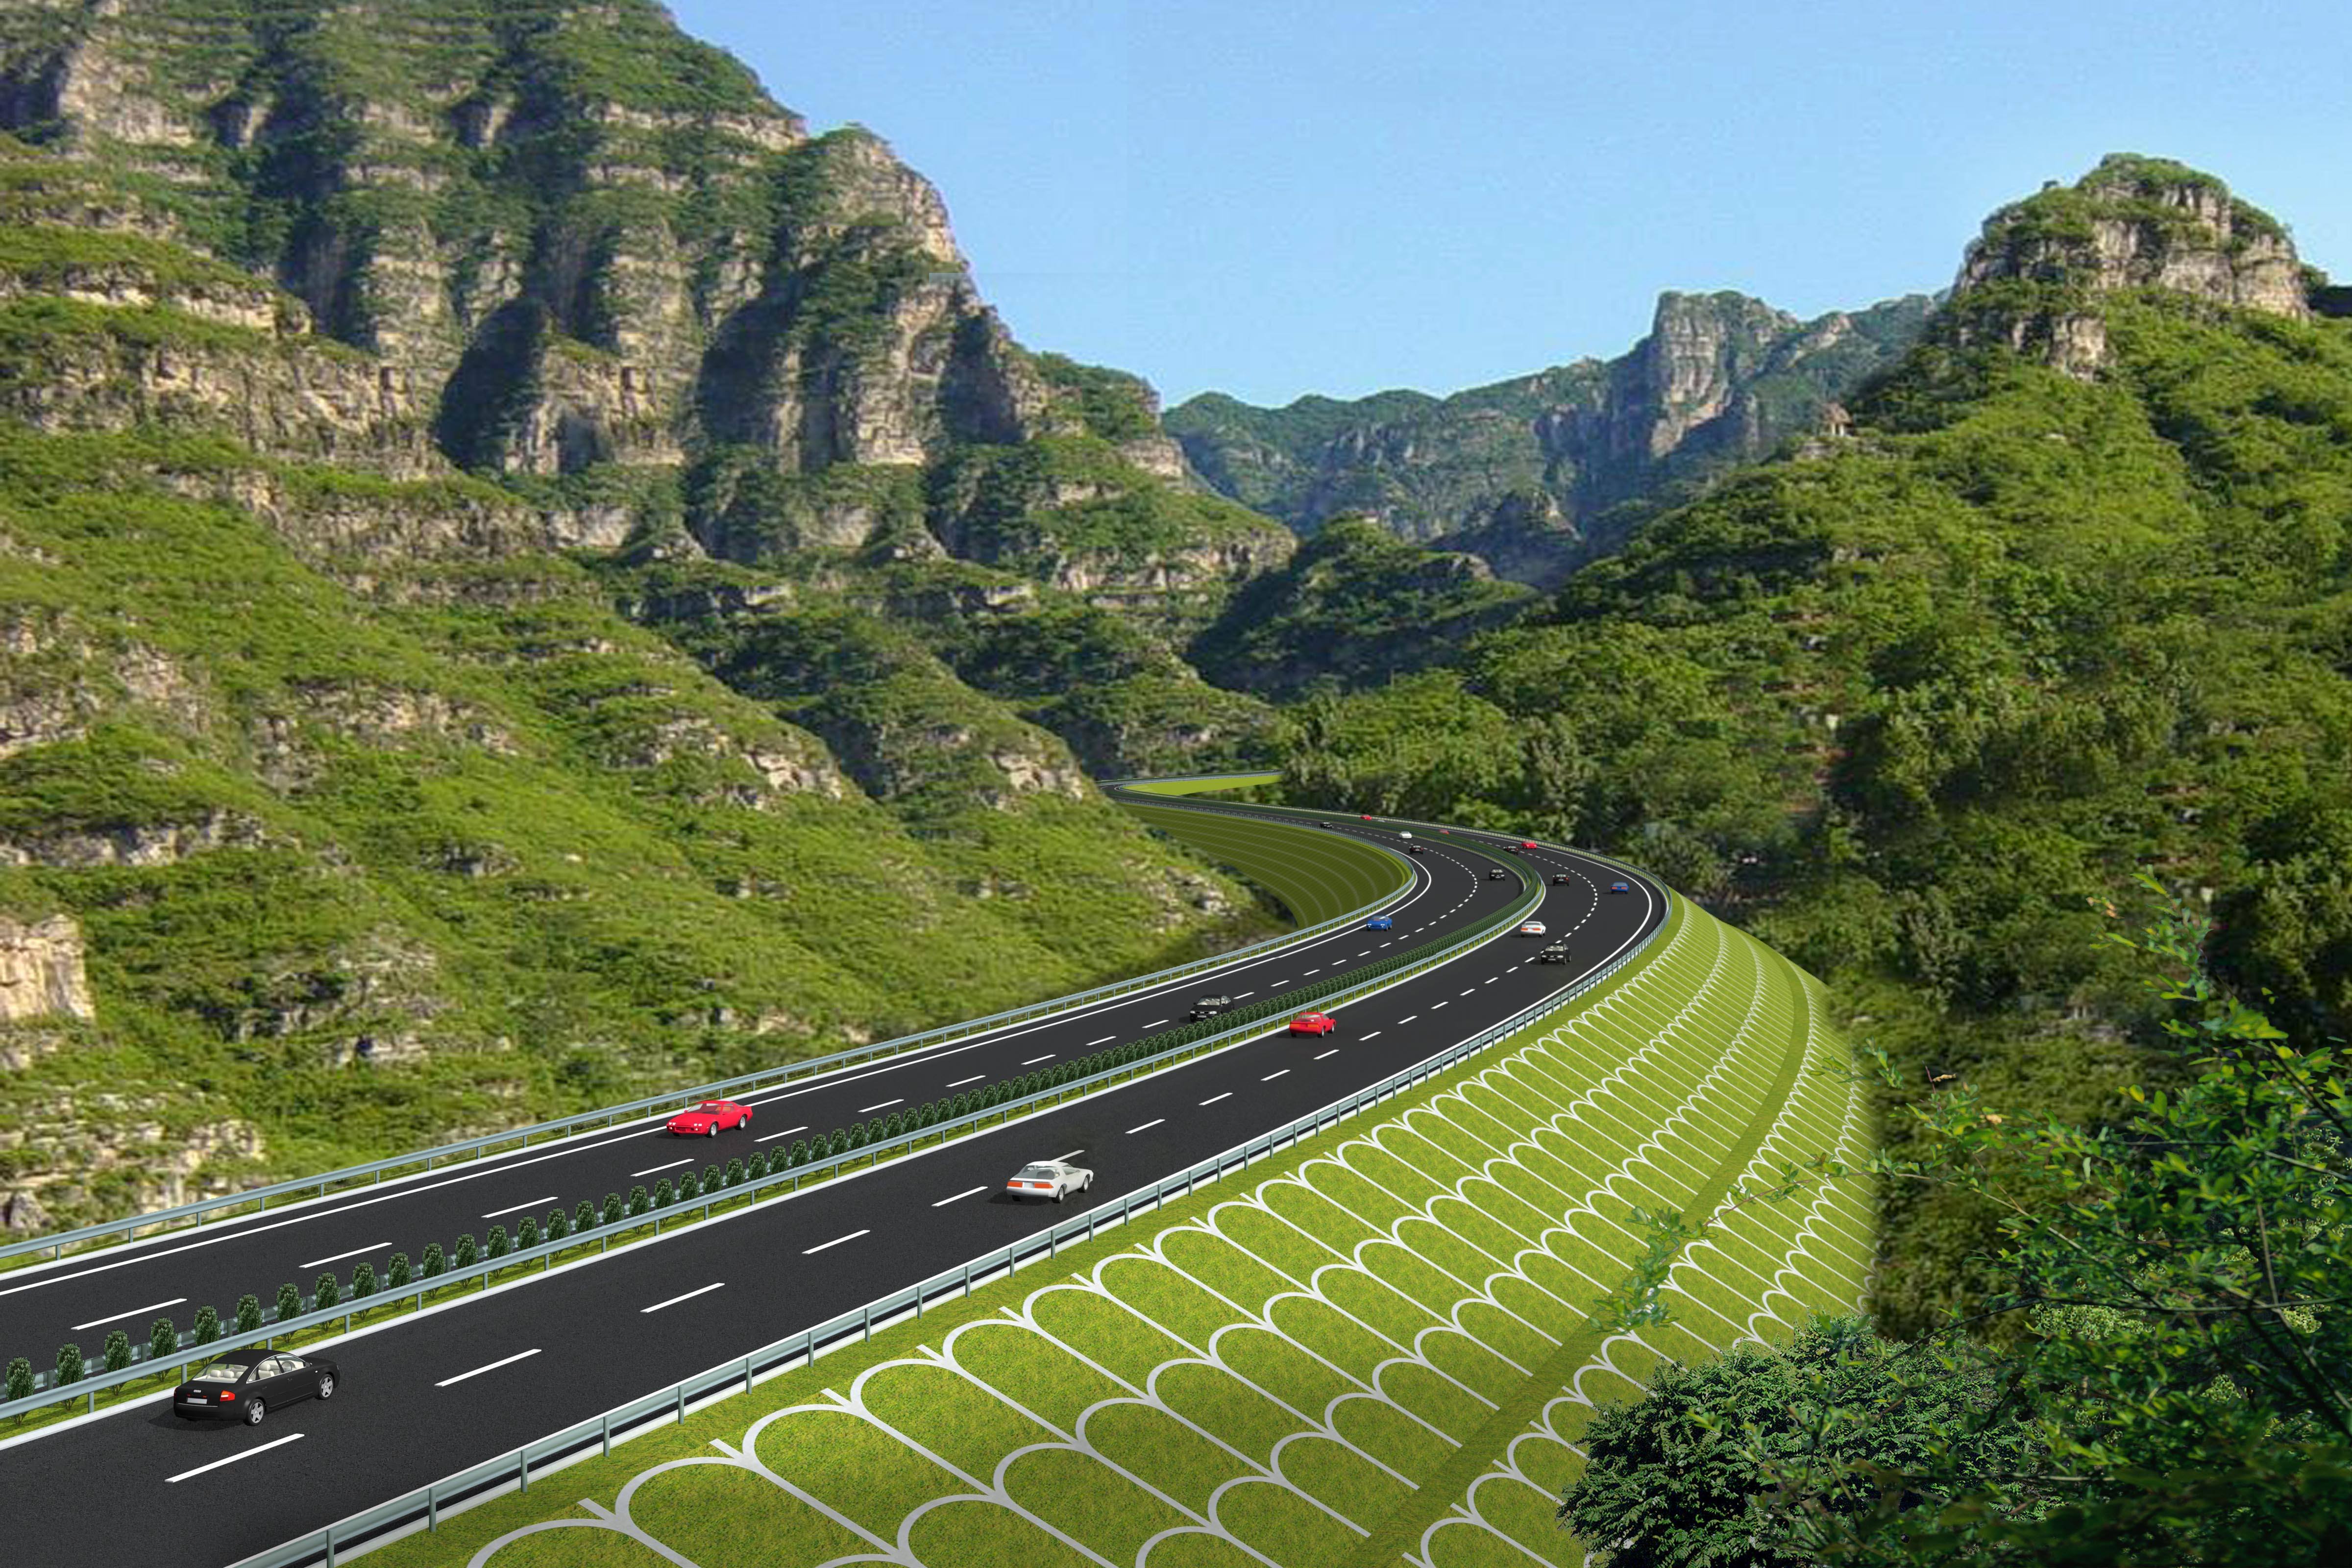 四川在建的一条高速公路,投资达88亿,双向四车道,全长约84公里